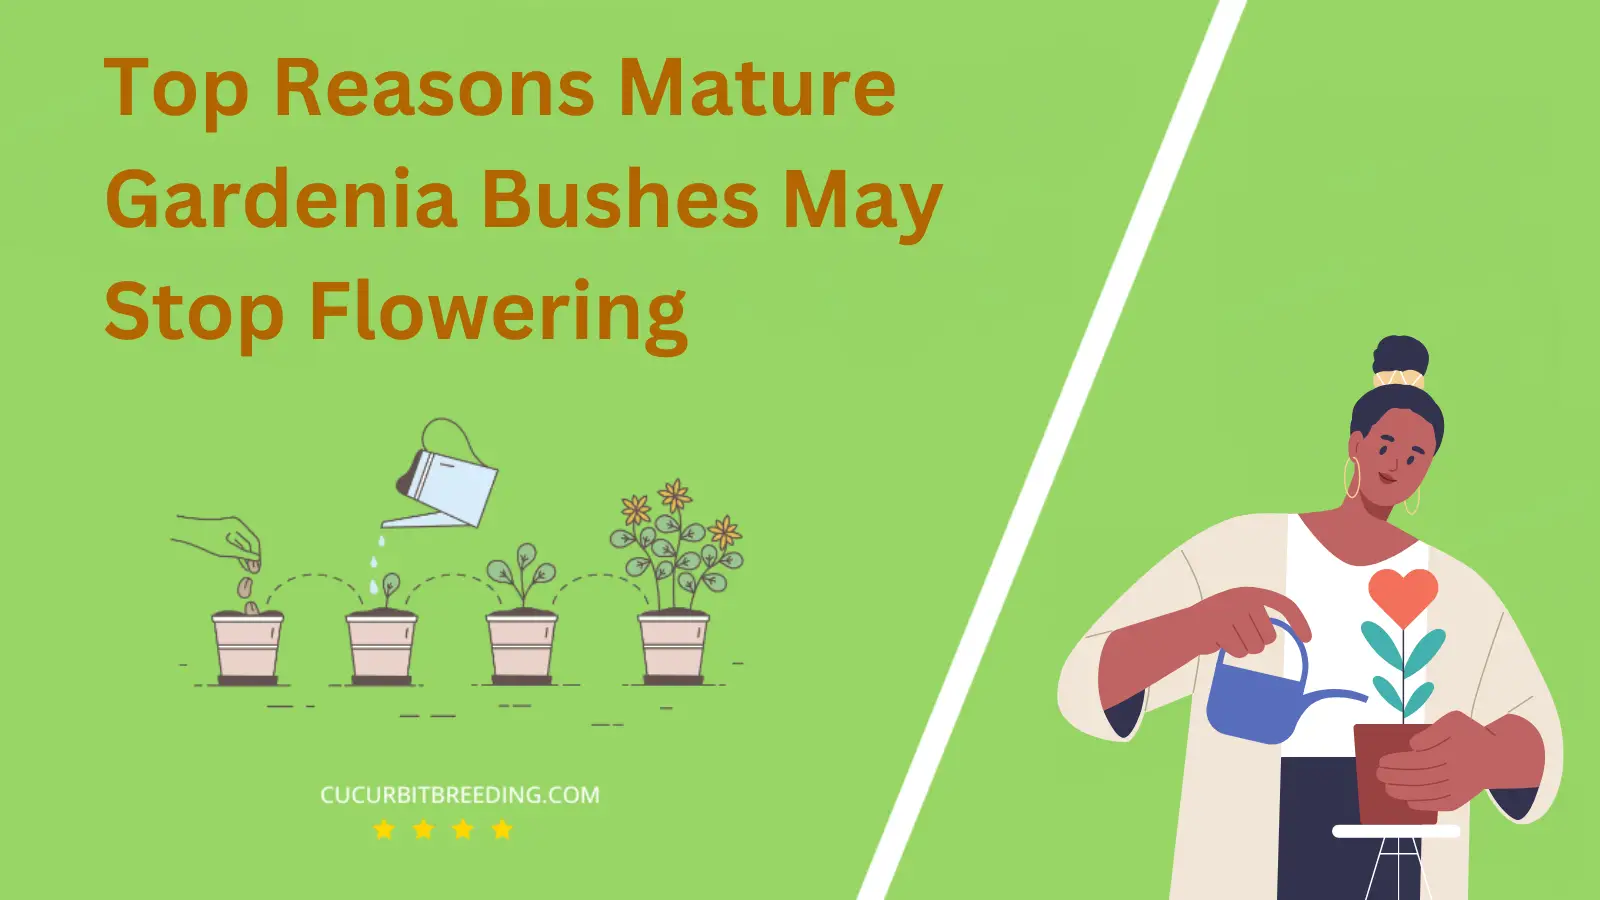 Top Reasons Mature Gardenia Bushes May Stop Flowering